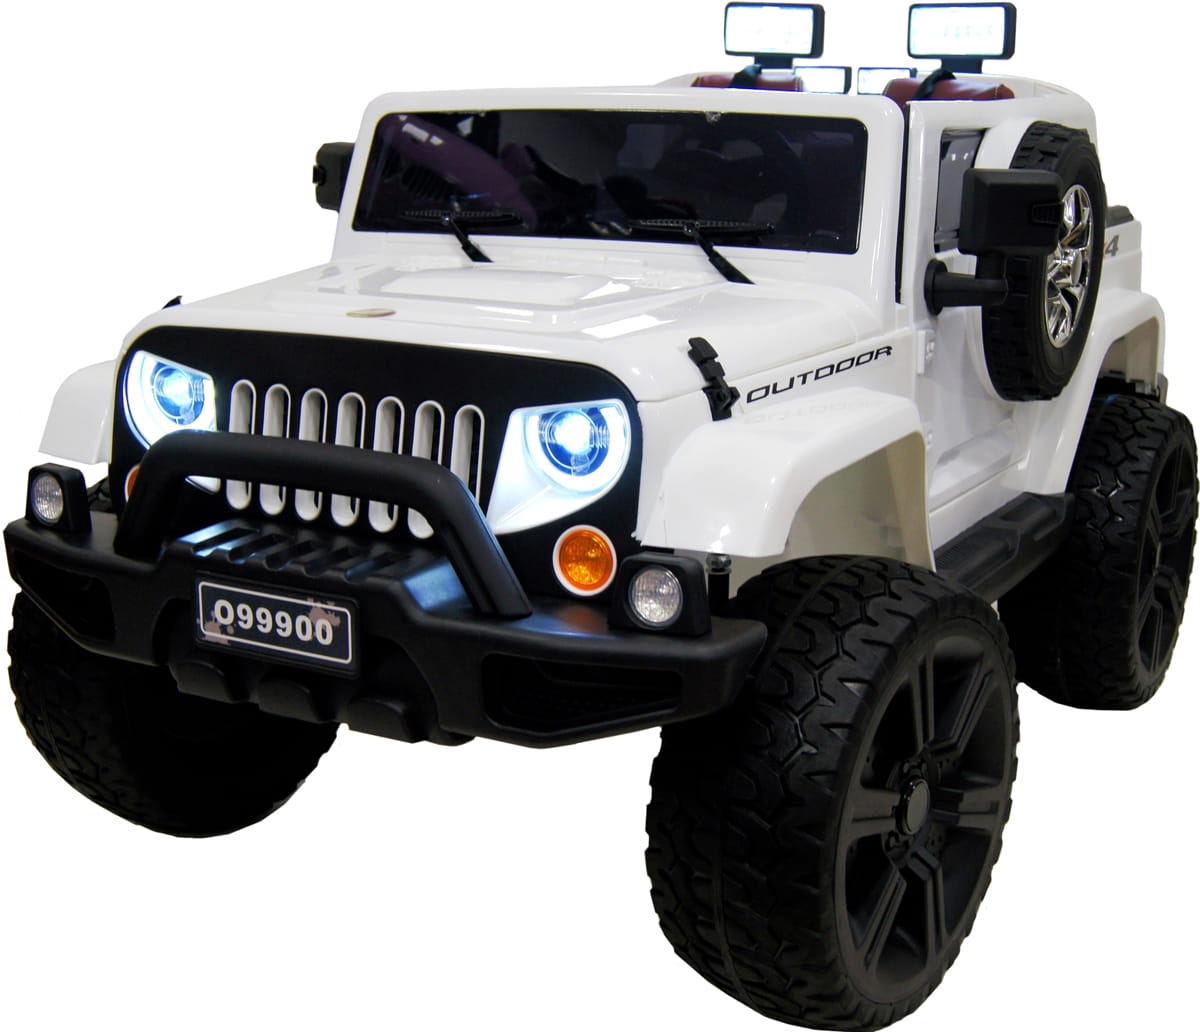 Электромобиль River Toys Jeep Wrangler O999OO с дистанционным управлением - белый